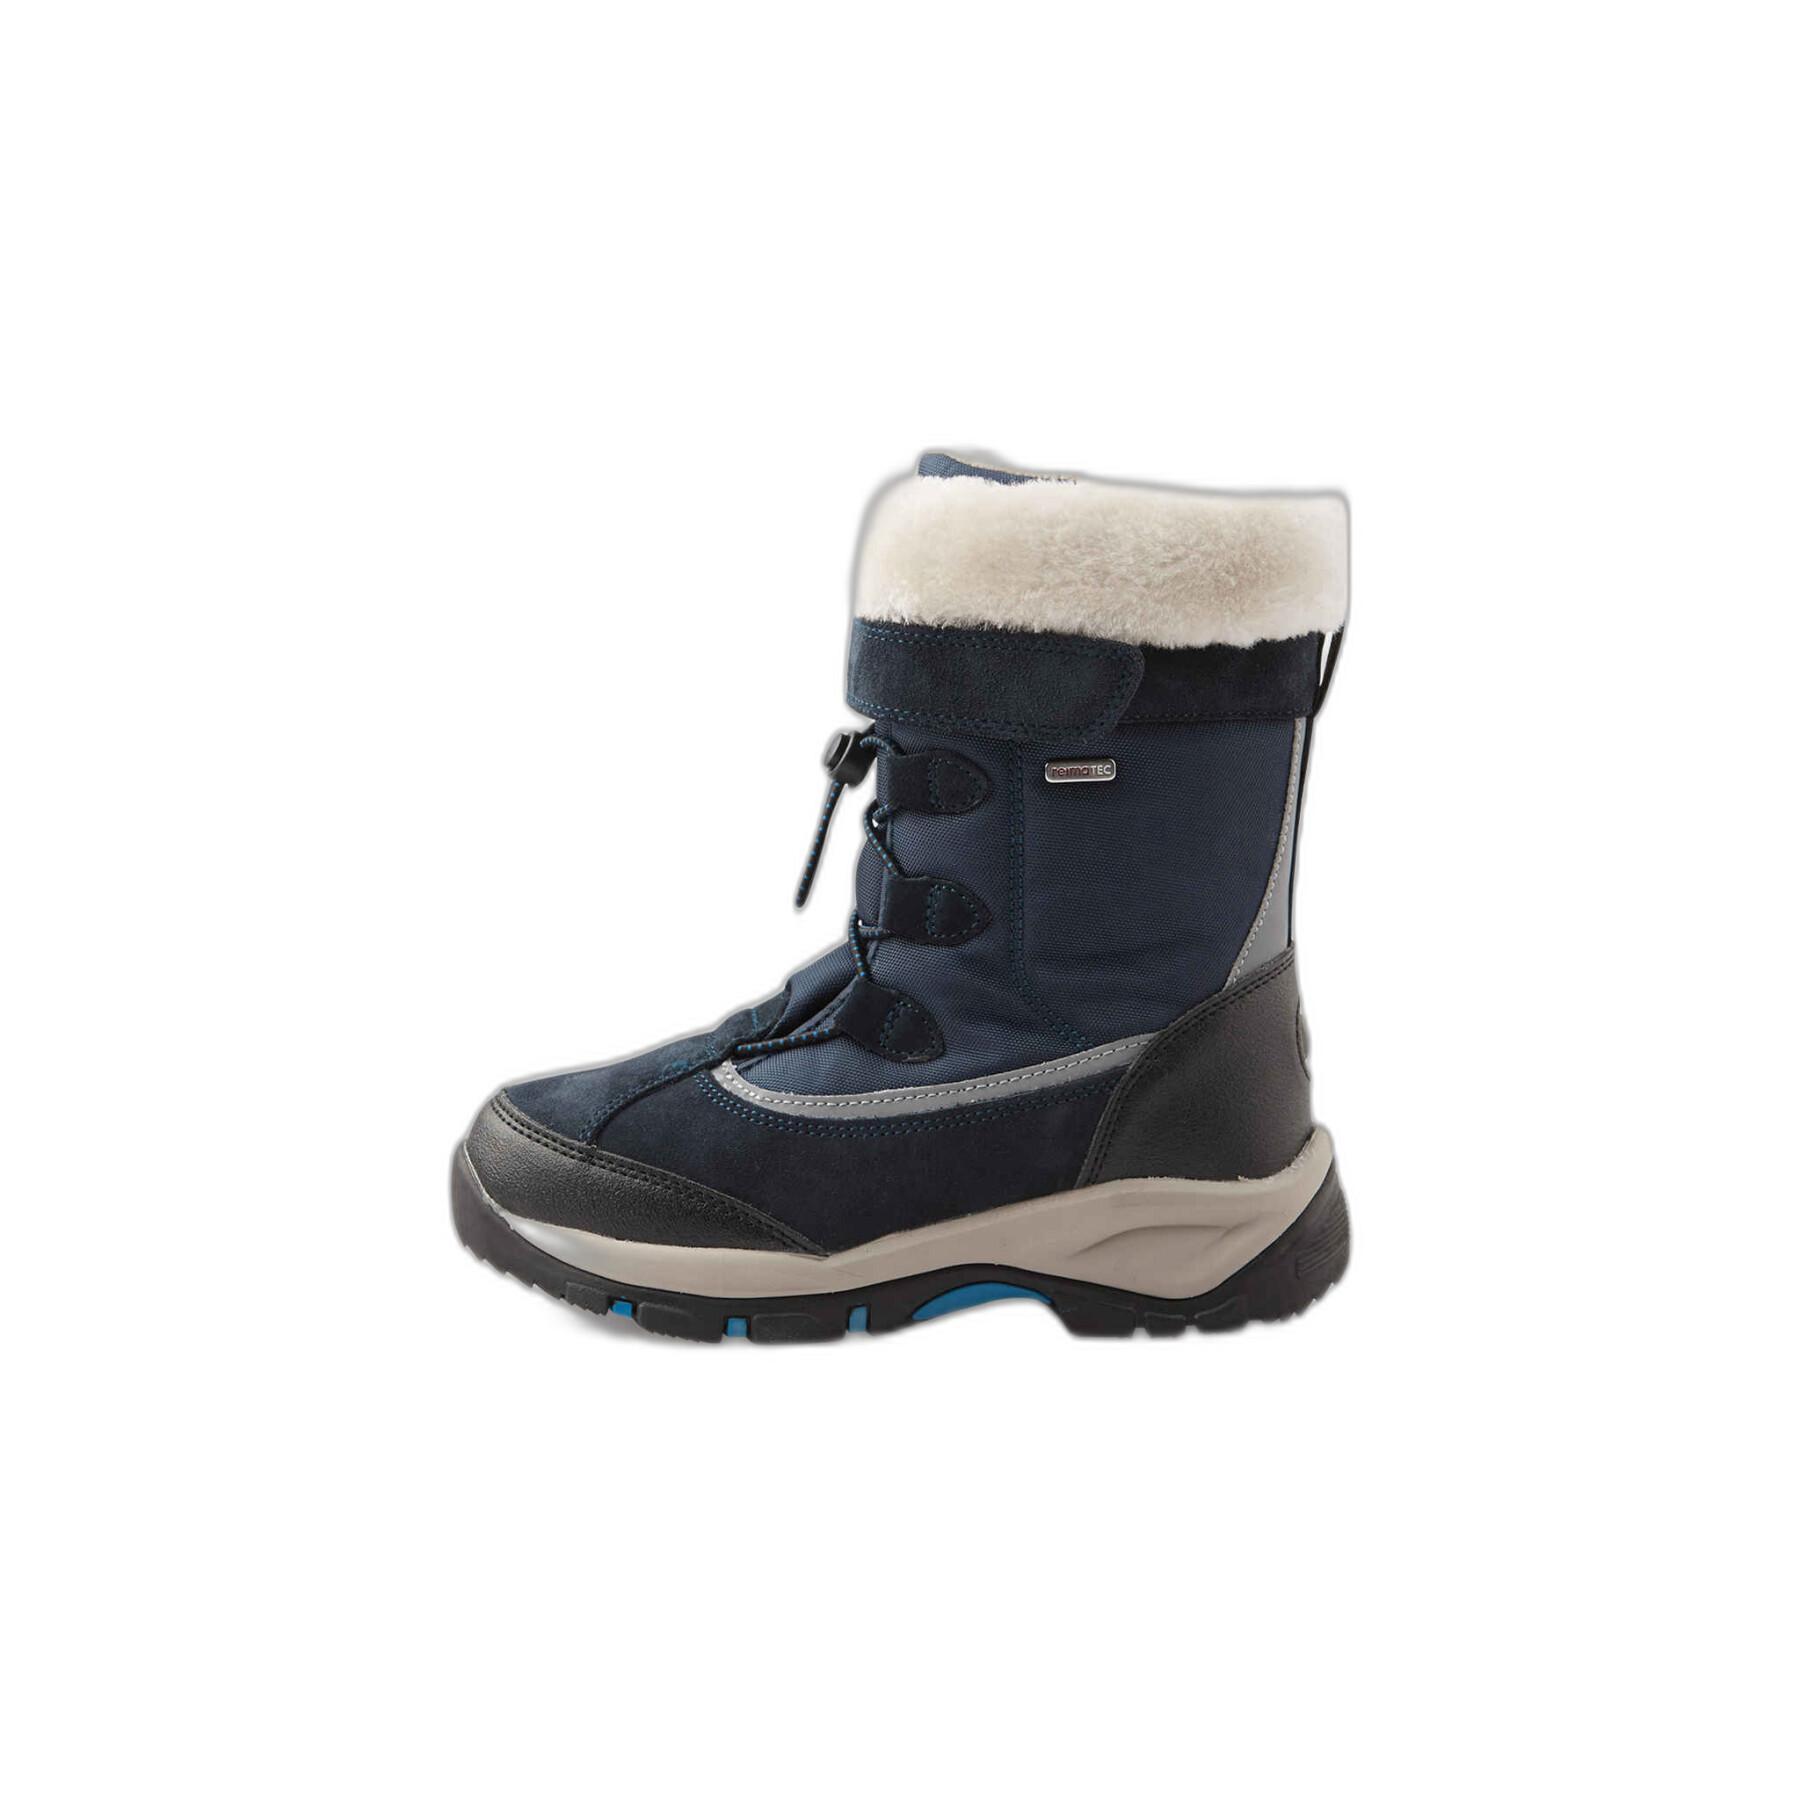 Baby winter boots Reima Samoyed